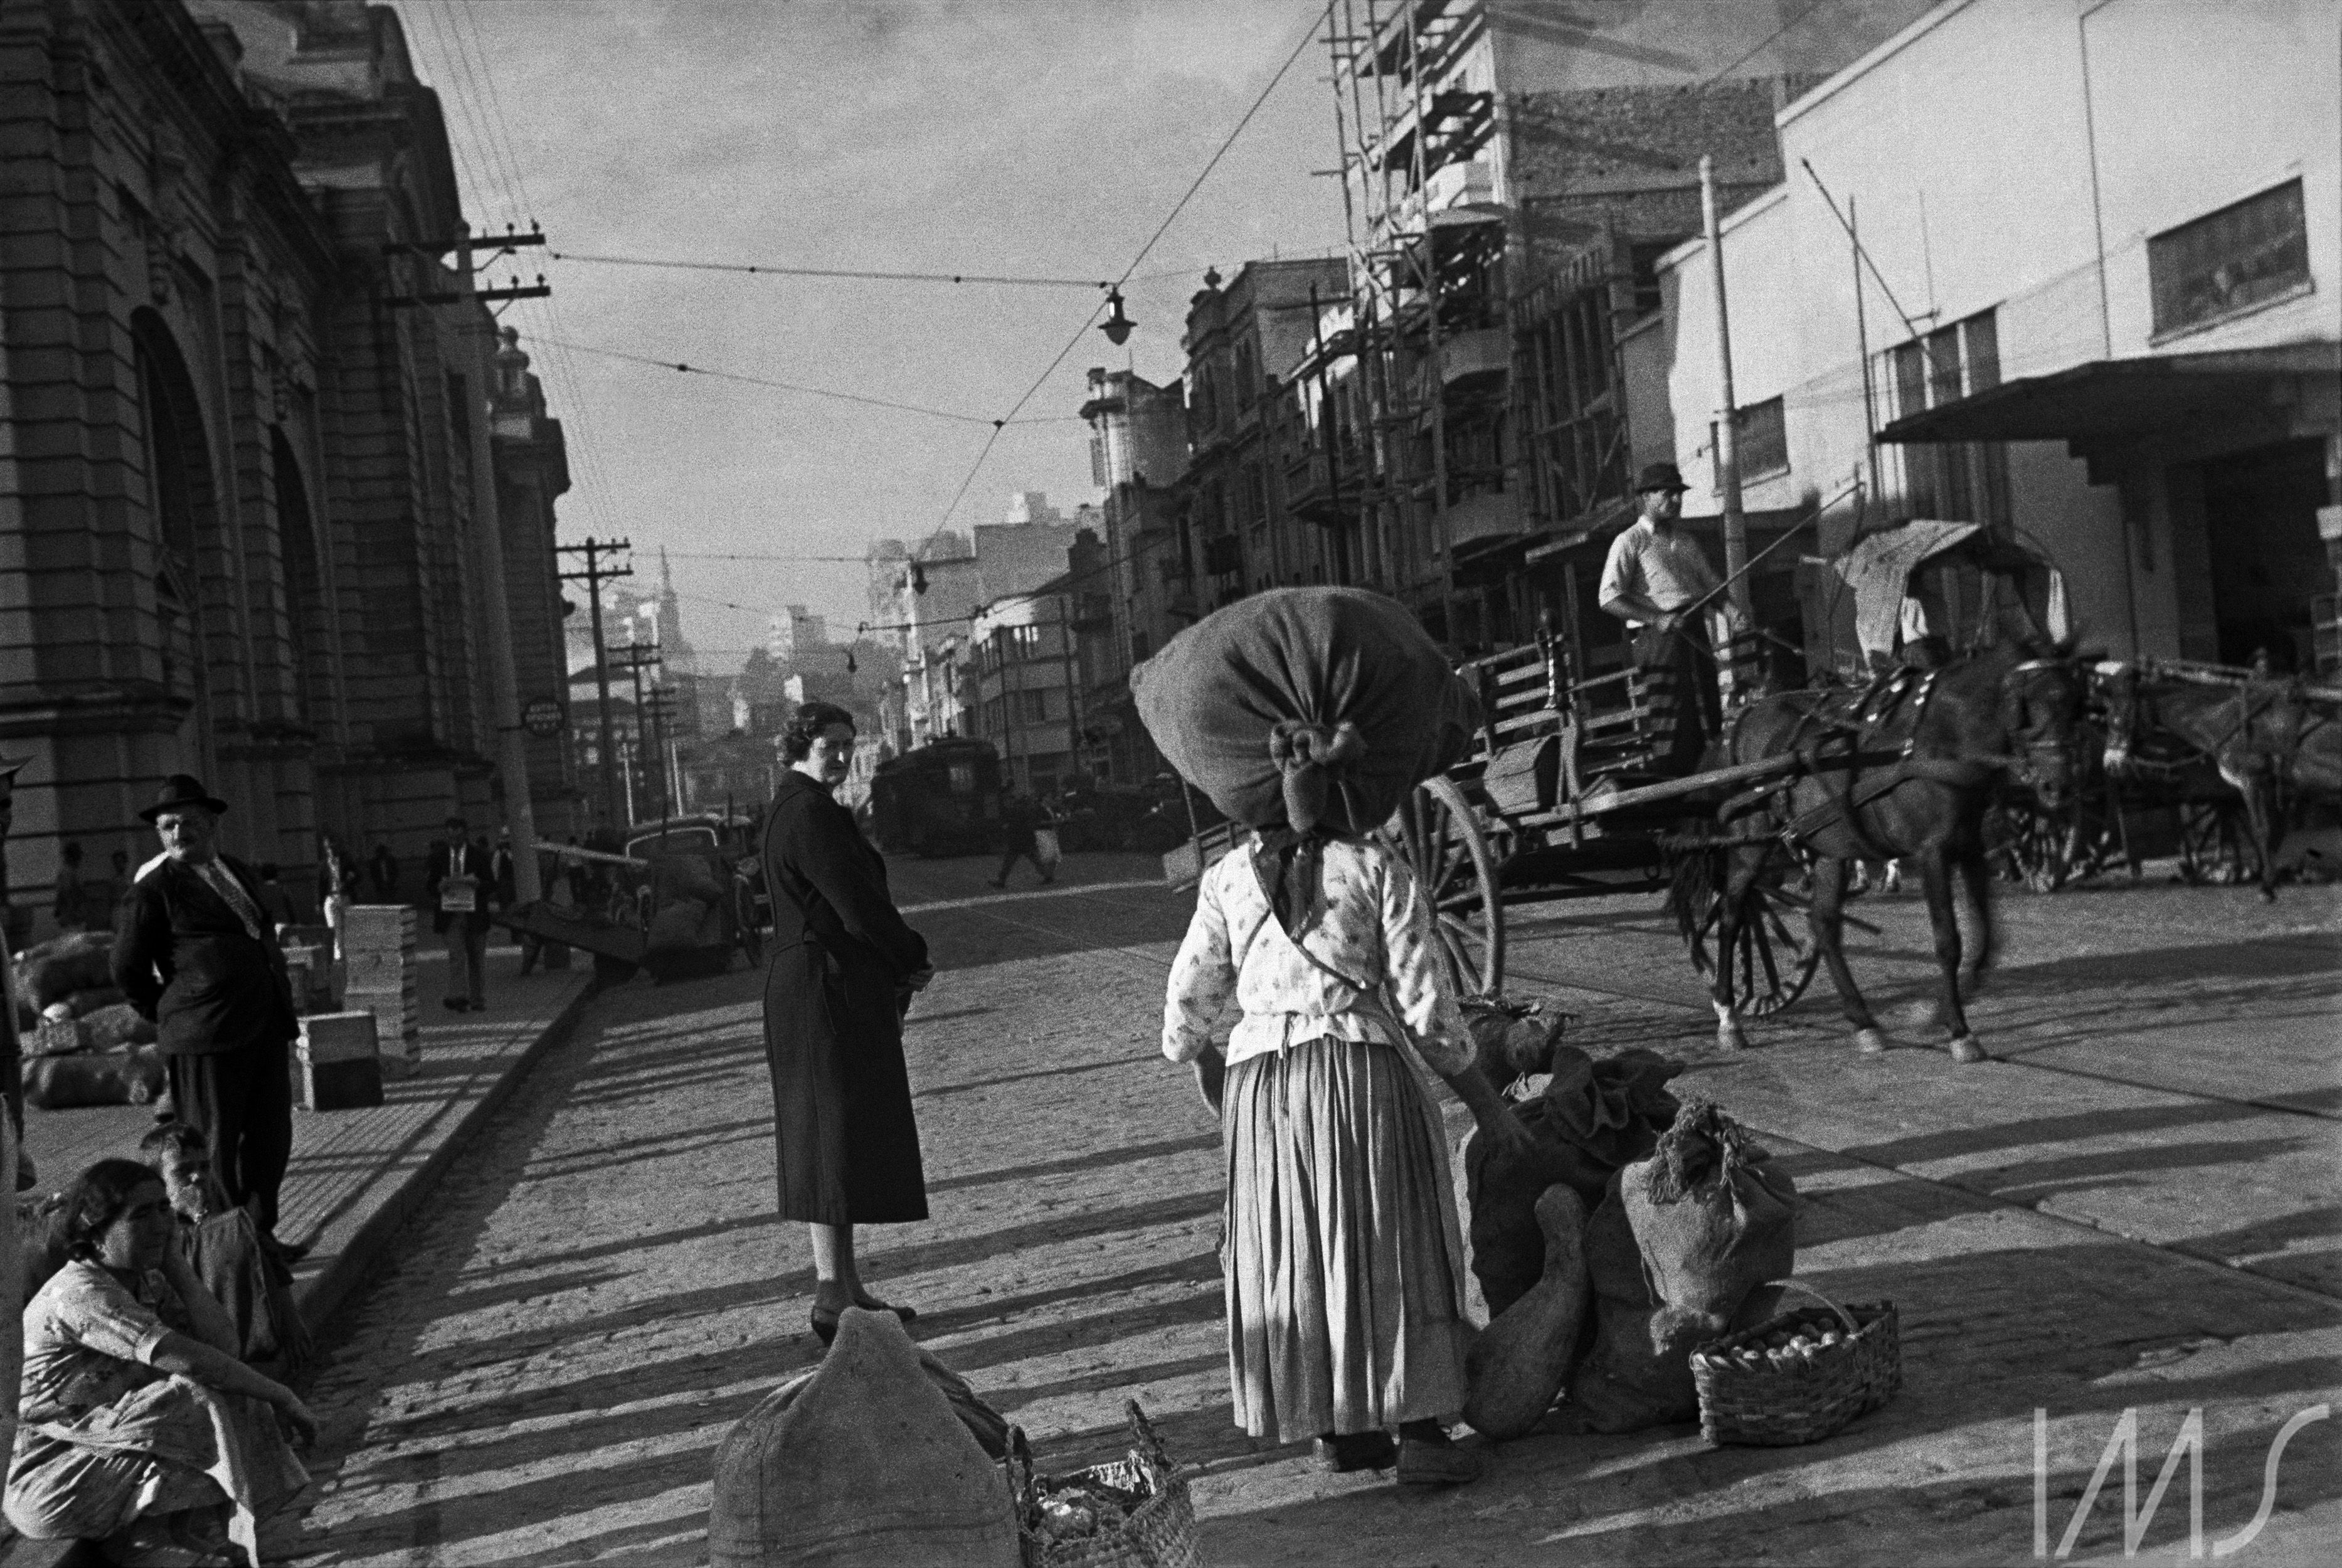 À espera do bonde na Zona Cerealista, c. 1940. Centro, São Paulo. Foto de Hildegard Rosenthal / Acervo IMS